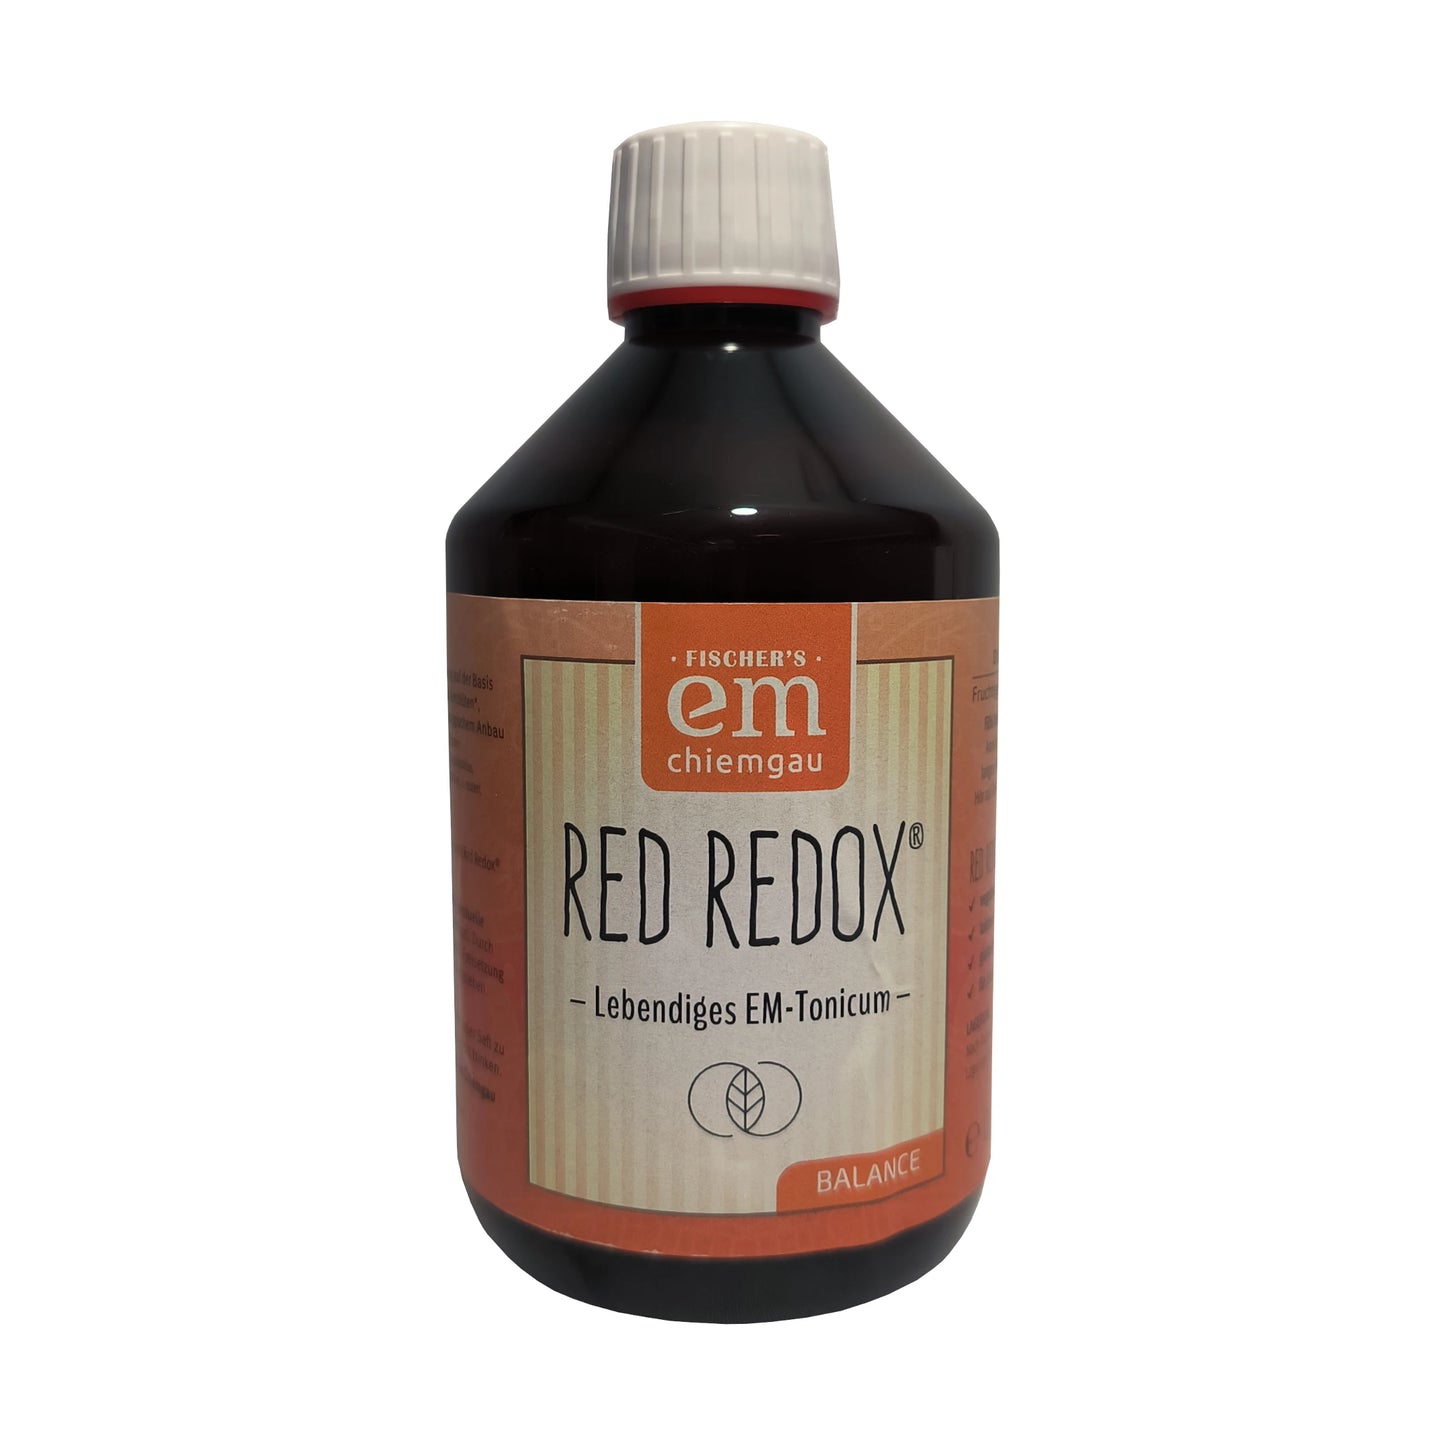 Red Redox ein Fermentgetränk mit Aroniabeeren und Molke. Verwendung bei Magen-Darm Befindlichkeiten